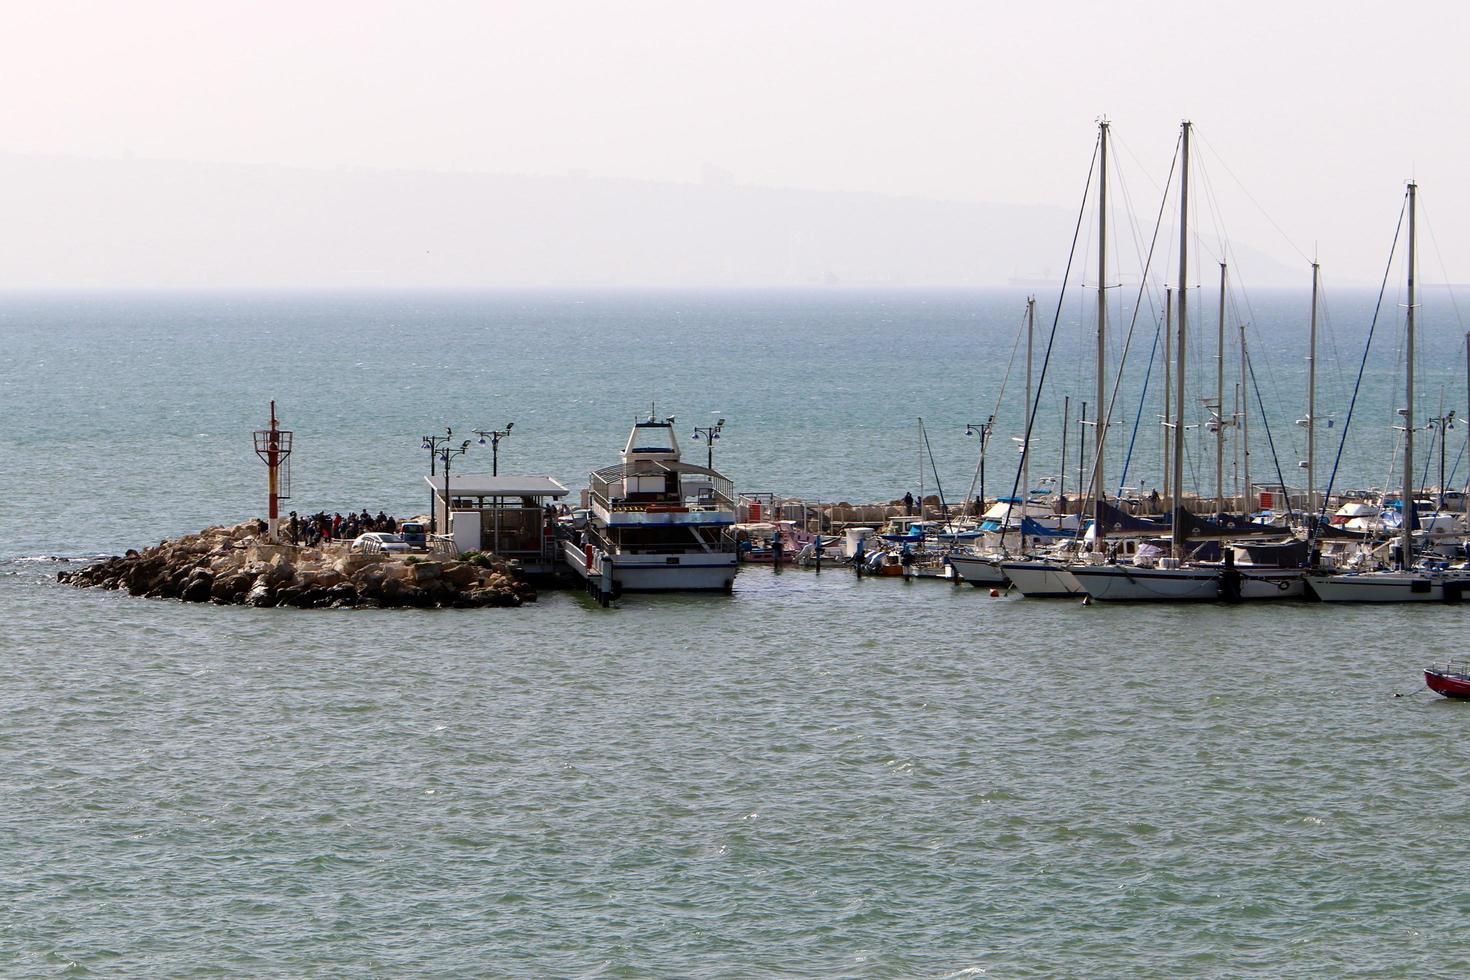 acre Israël 21 januari 2019. de stad Akko aan de Middellandse Zeekust in Noord-Israël. foto